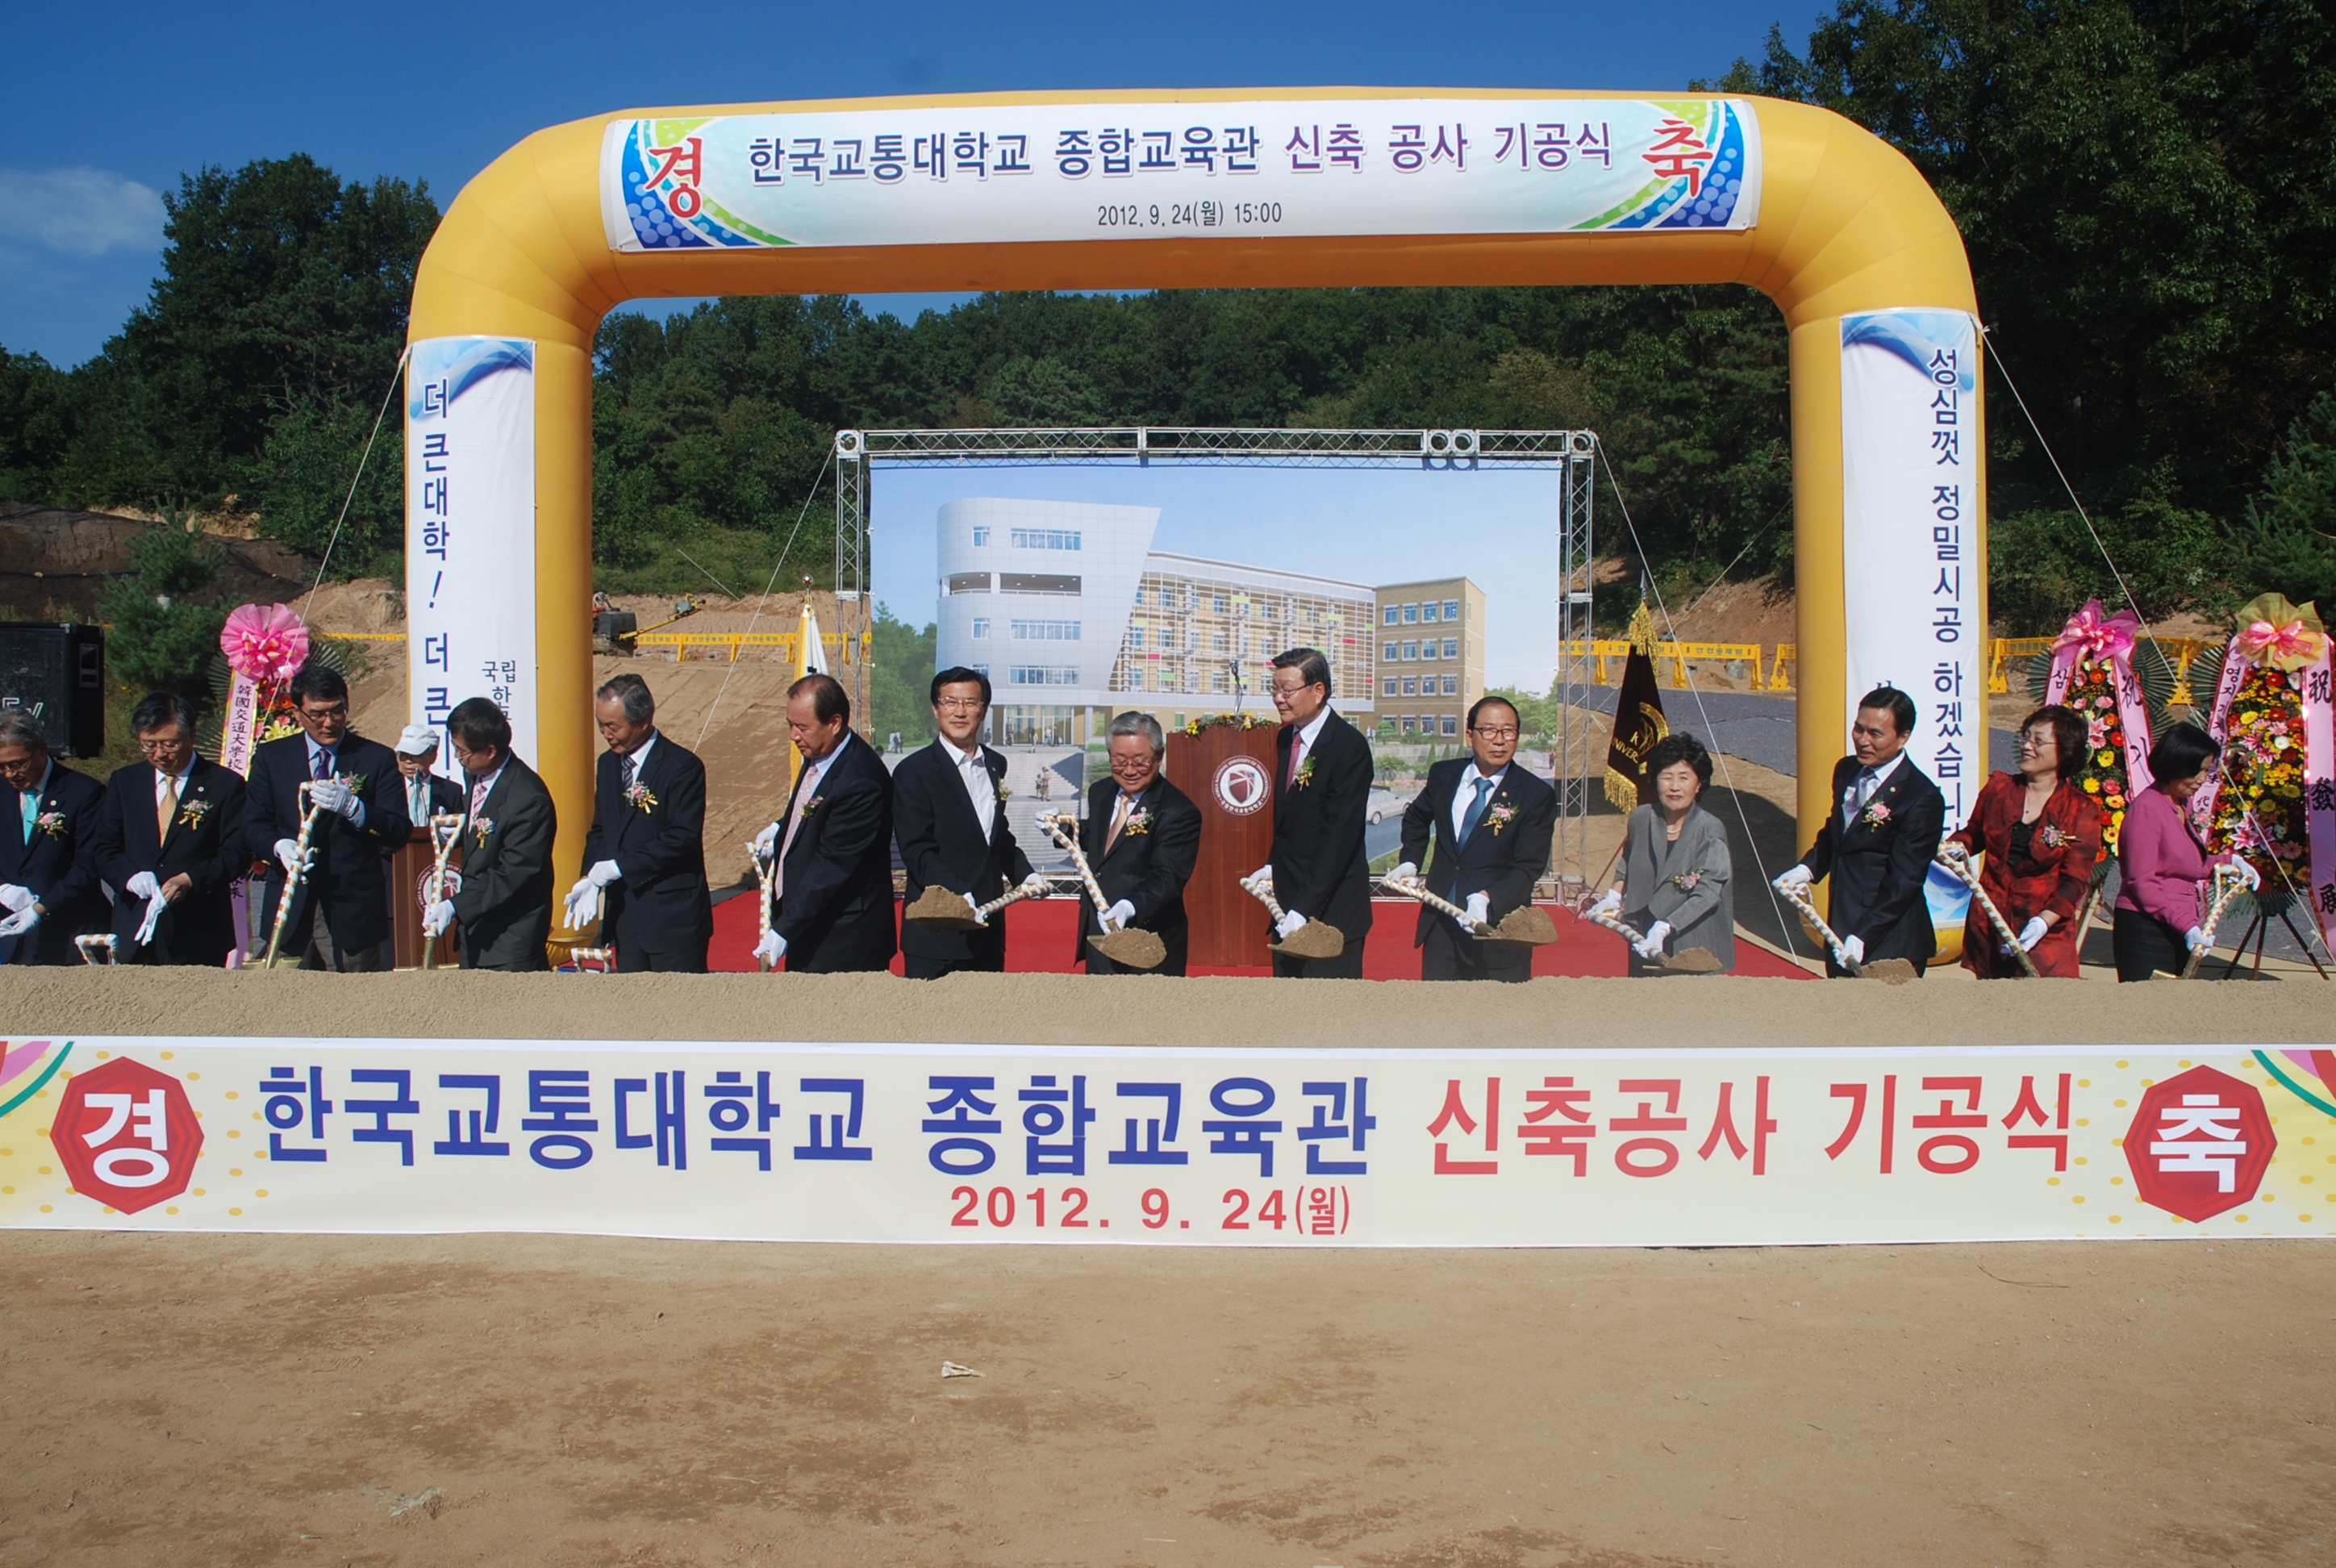 한국교통대학교 종합교육관 기공식